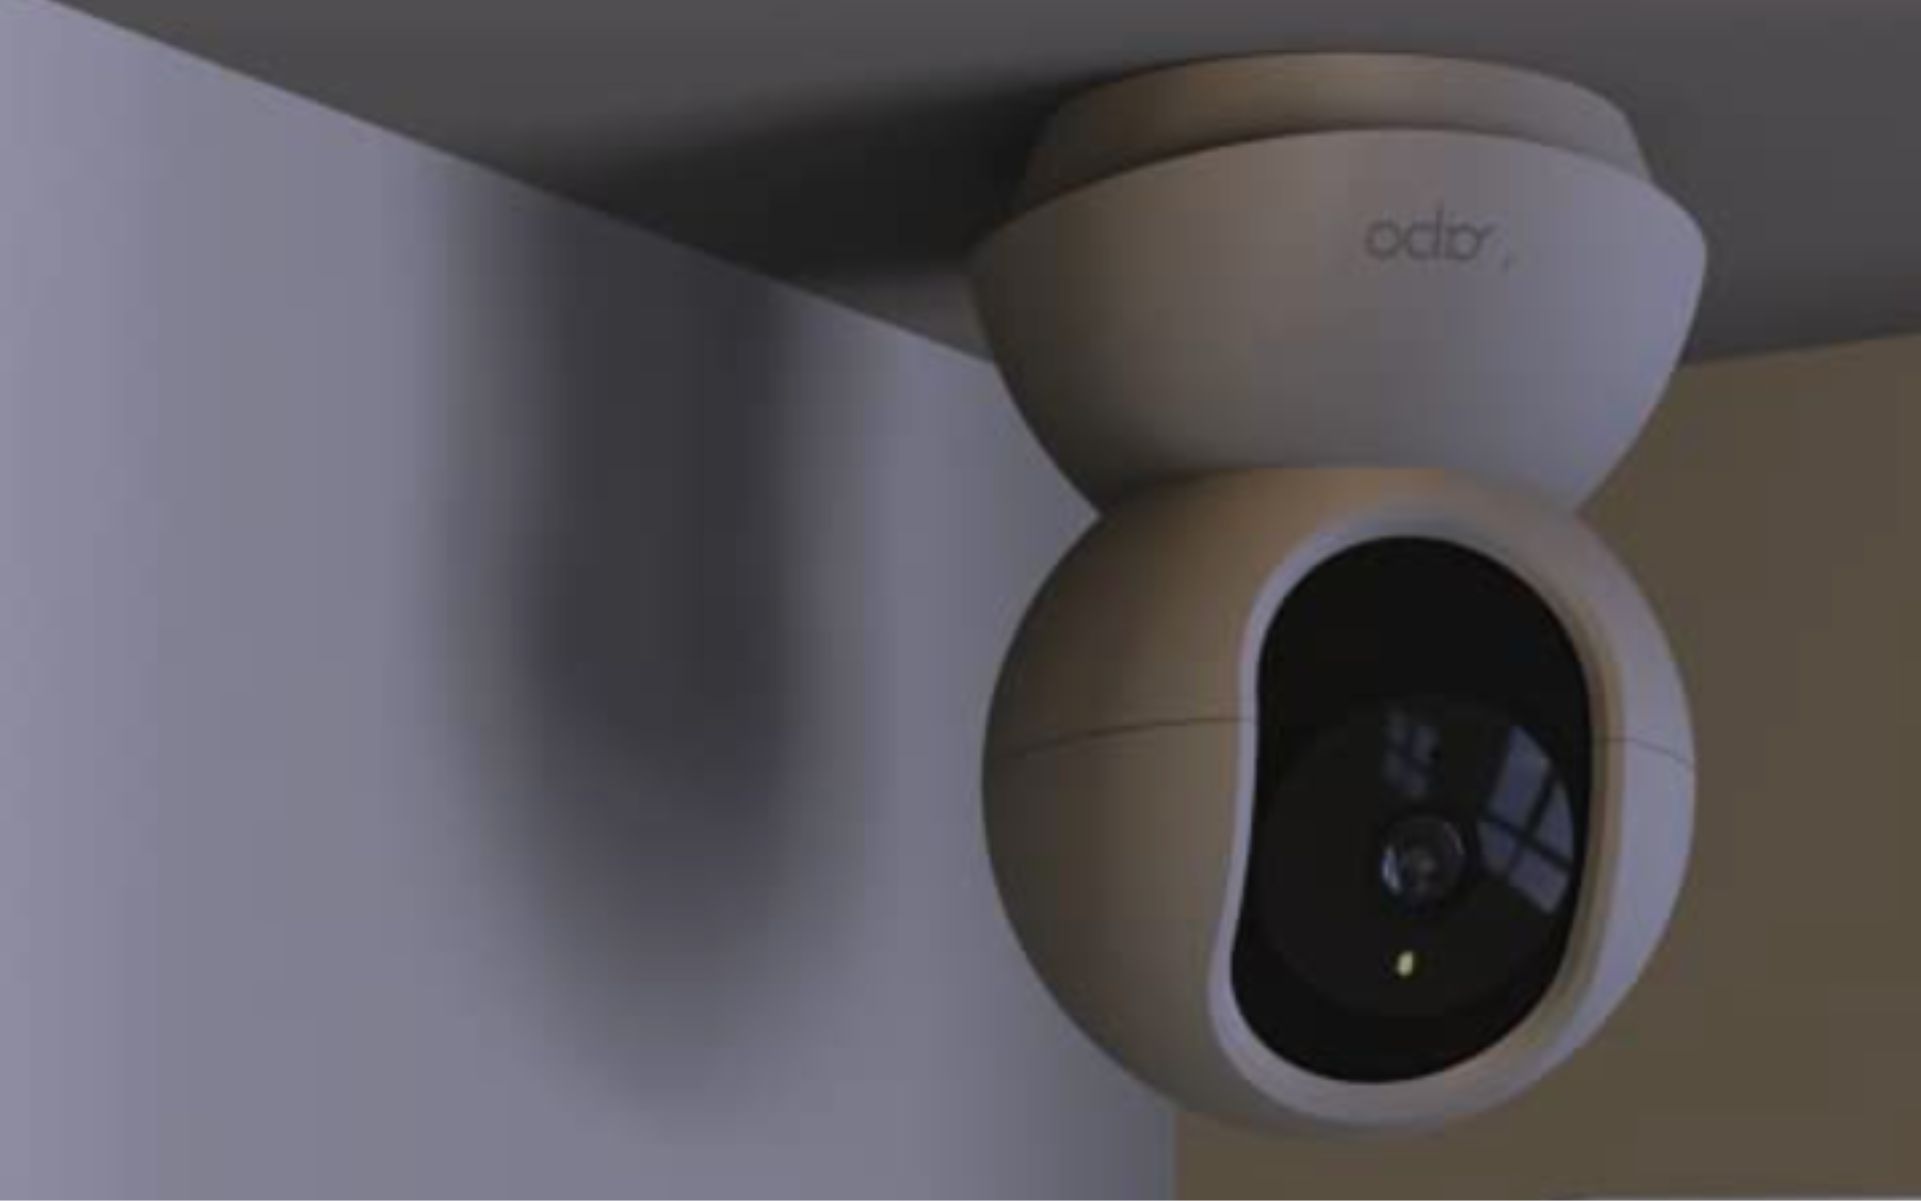 Tapo C500 : cette caméra de sécurité performante et déjà abordable